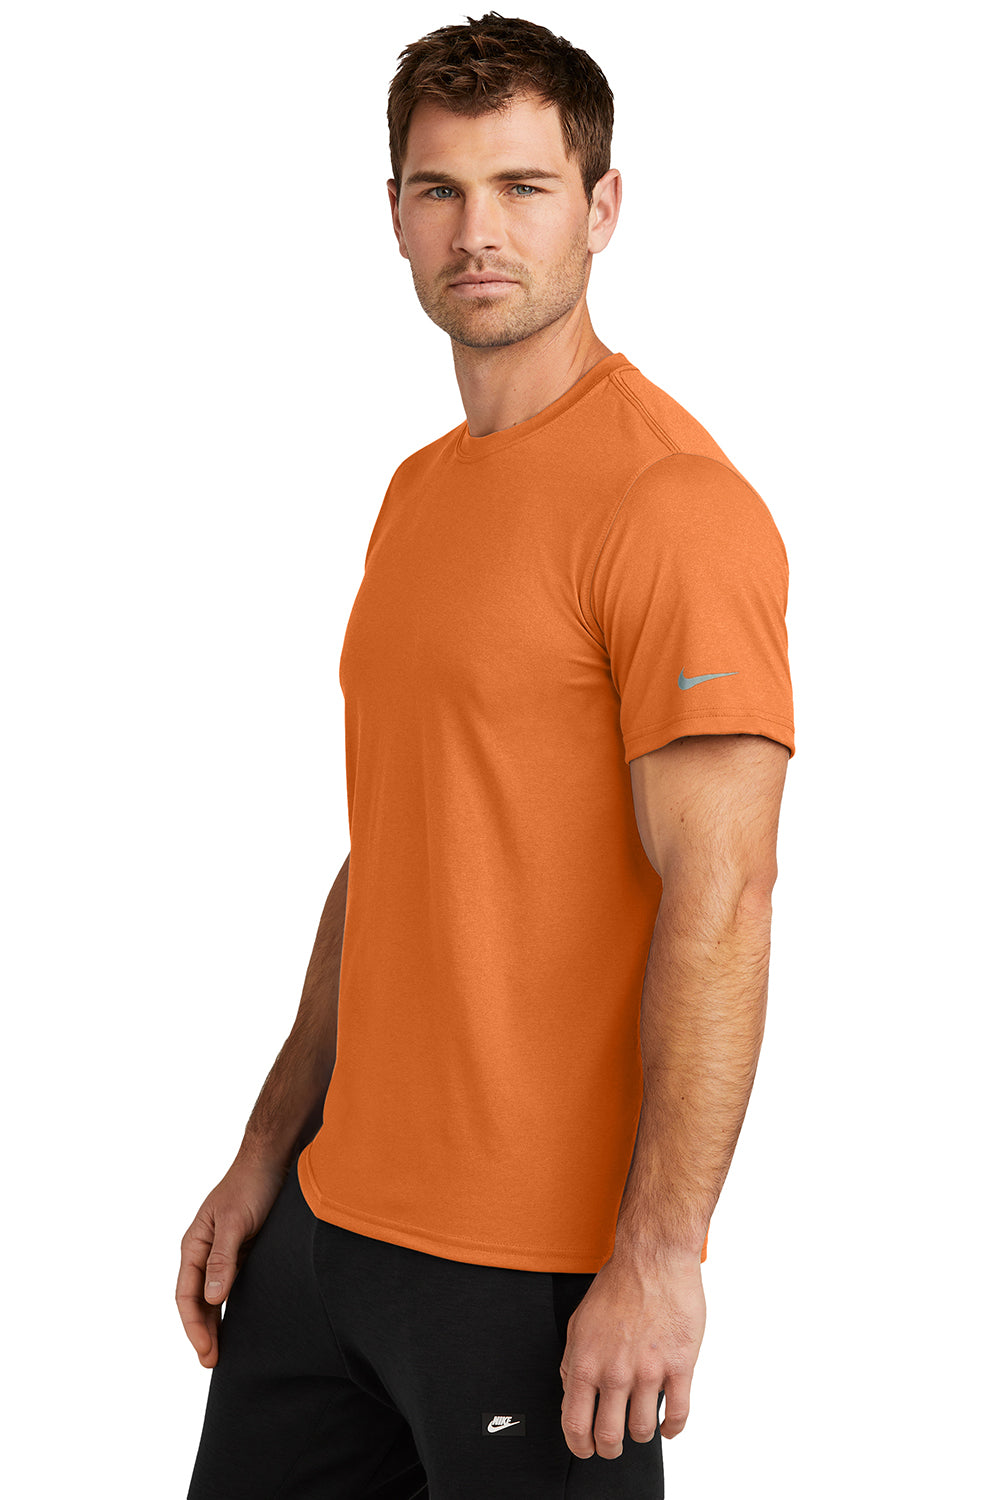 Nike NKDX8730 Mens rLegend Dri-Fit Moisture Wicking Short Sleeve Crewneck T-Shirt Desert Orange Model Side